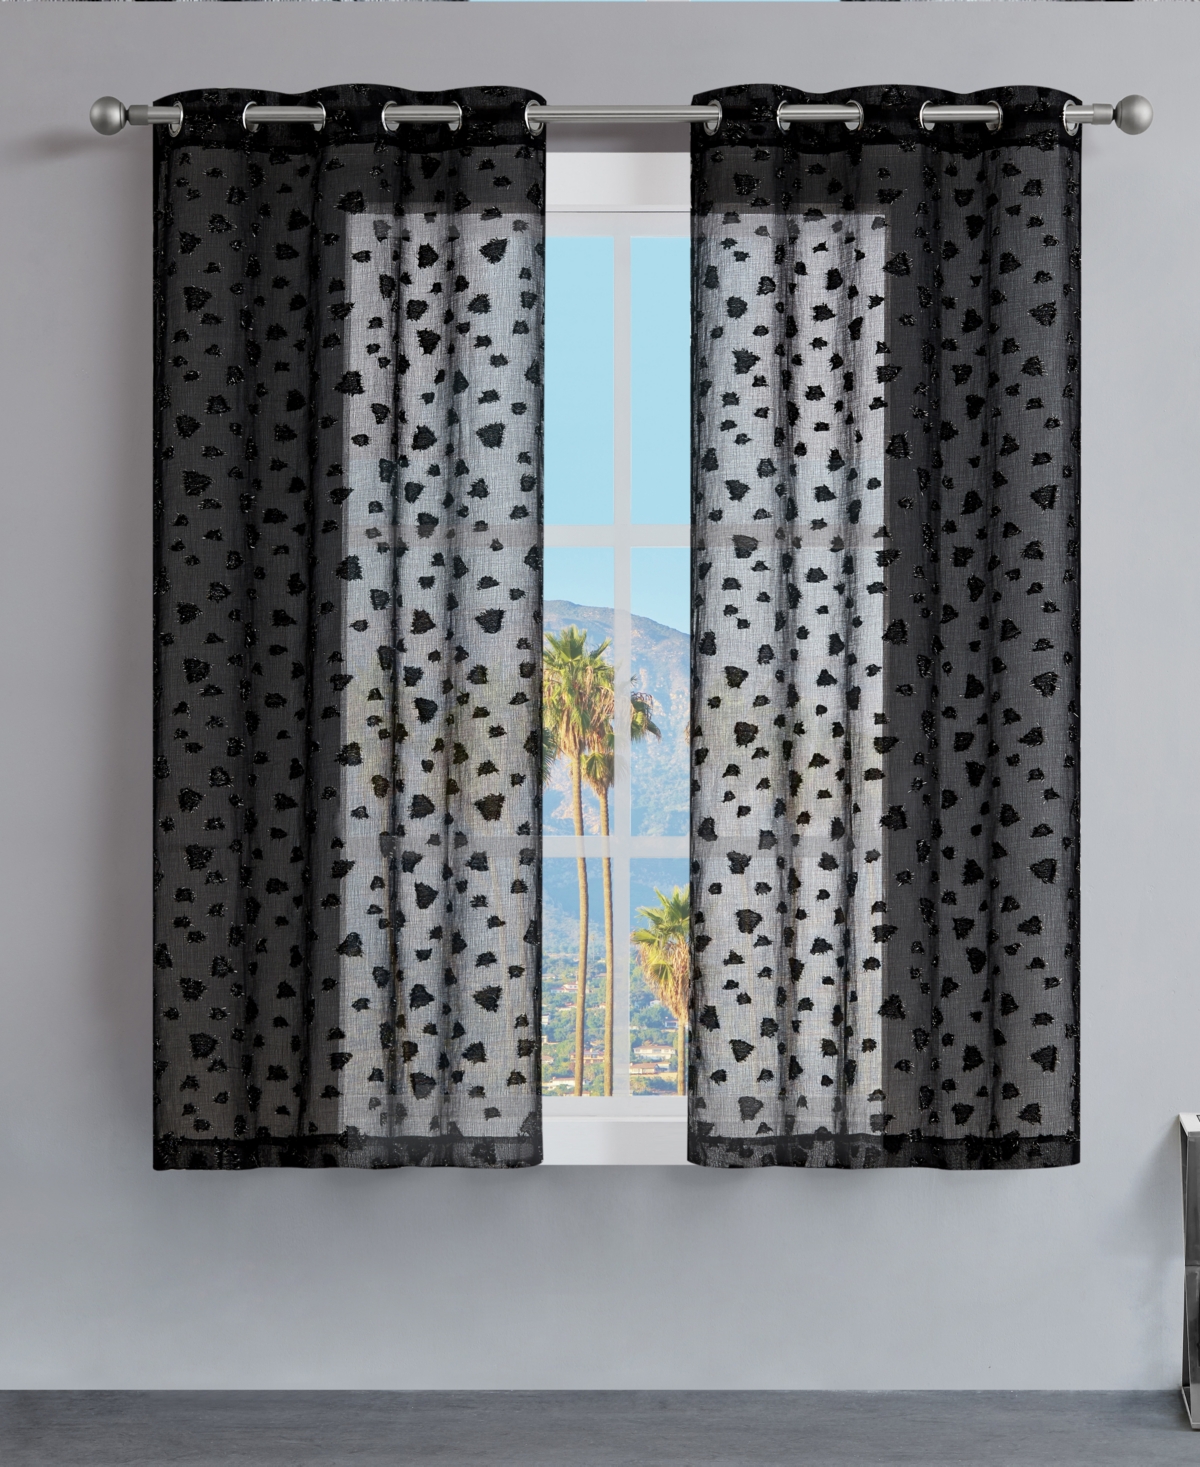 Ethel Leopard Embellished Sheer Grommet Window Curtain Panel Set, 38" x 63" - Black